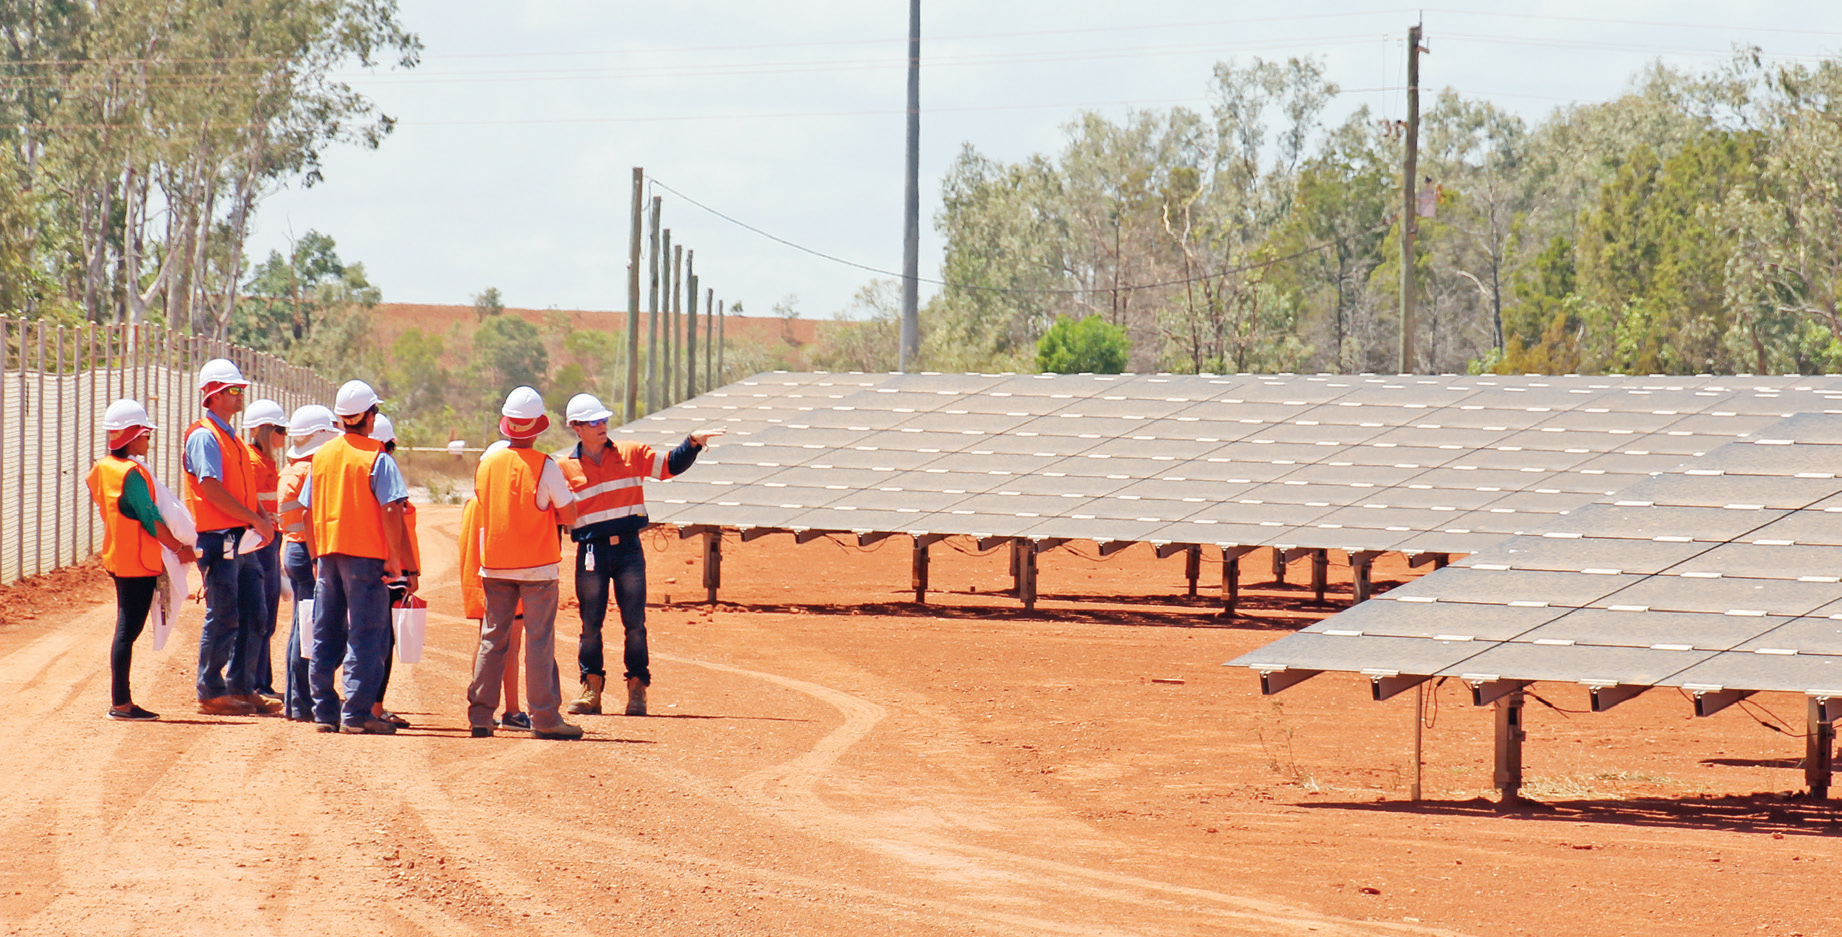 Rio solar farm opening 2015